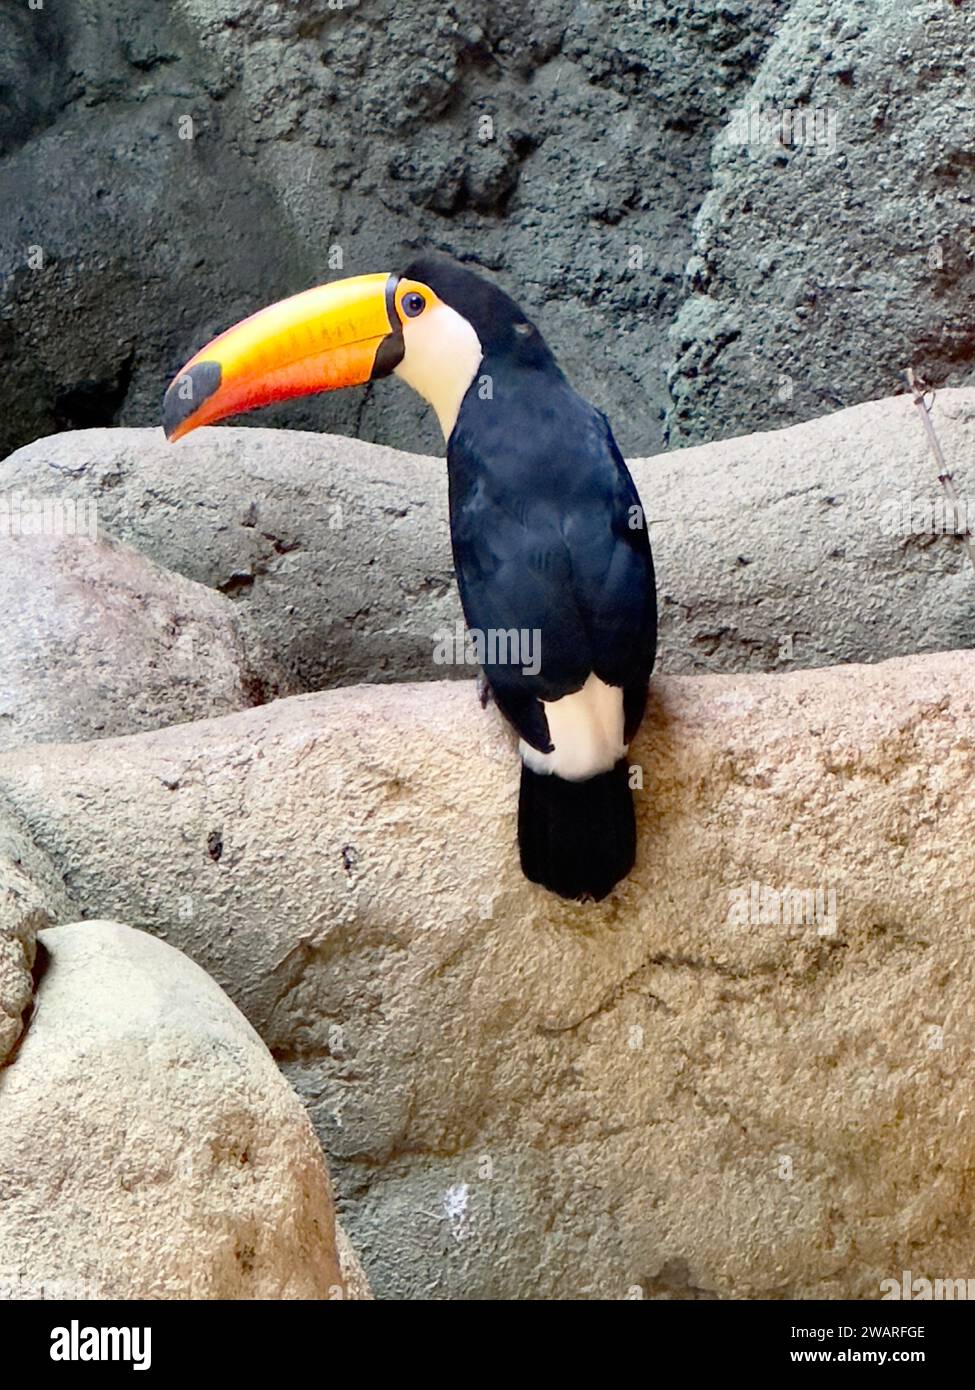 Un bel oiseau perché au sommet d'un rocher dans un habitat de zoo, regardant au loin Banque D'Images